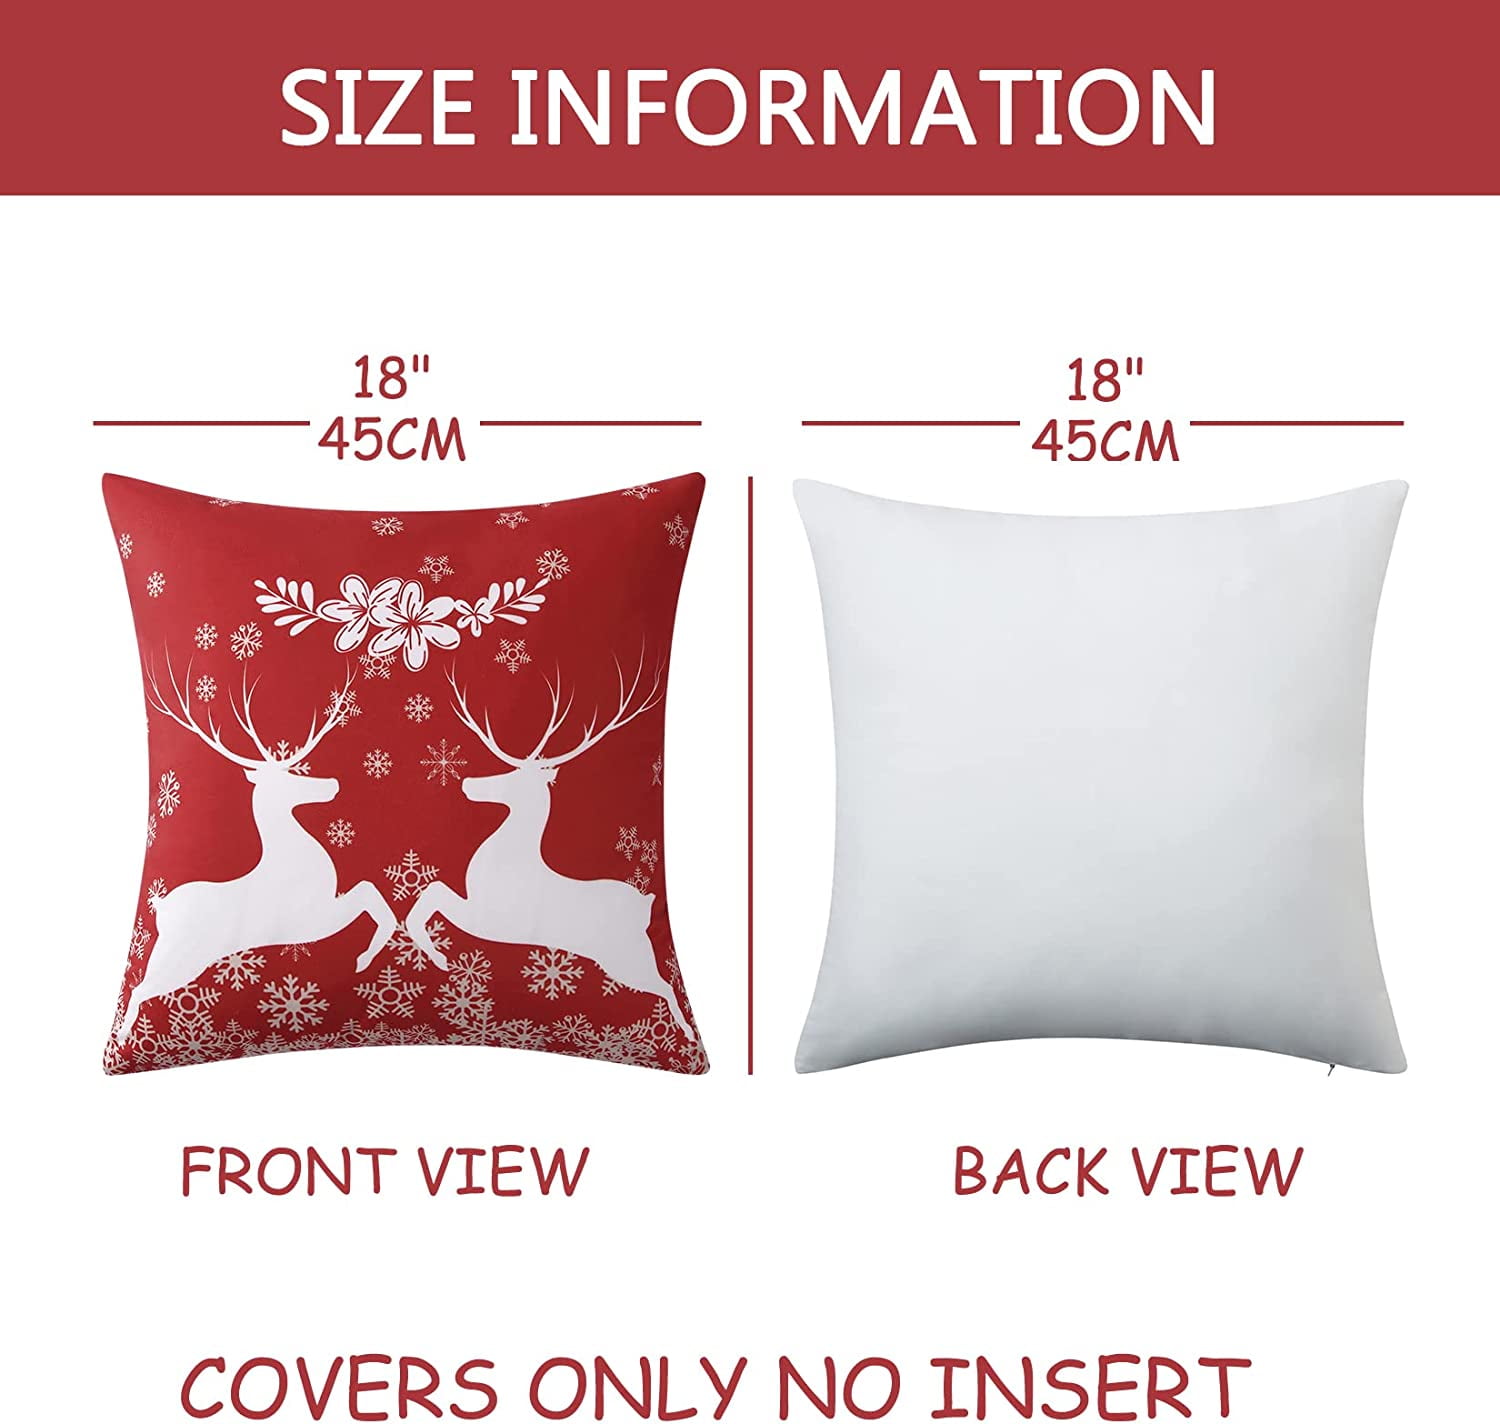 Kringle Chenille Santa Suit Pillow 18x18 - Allysons Place